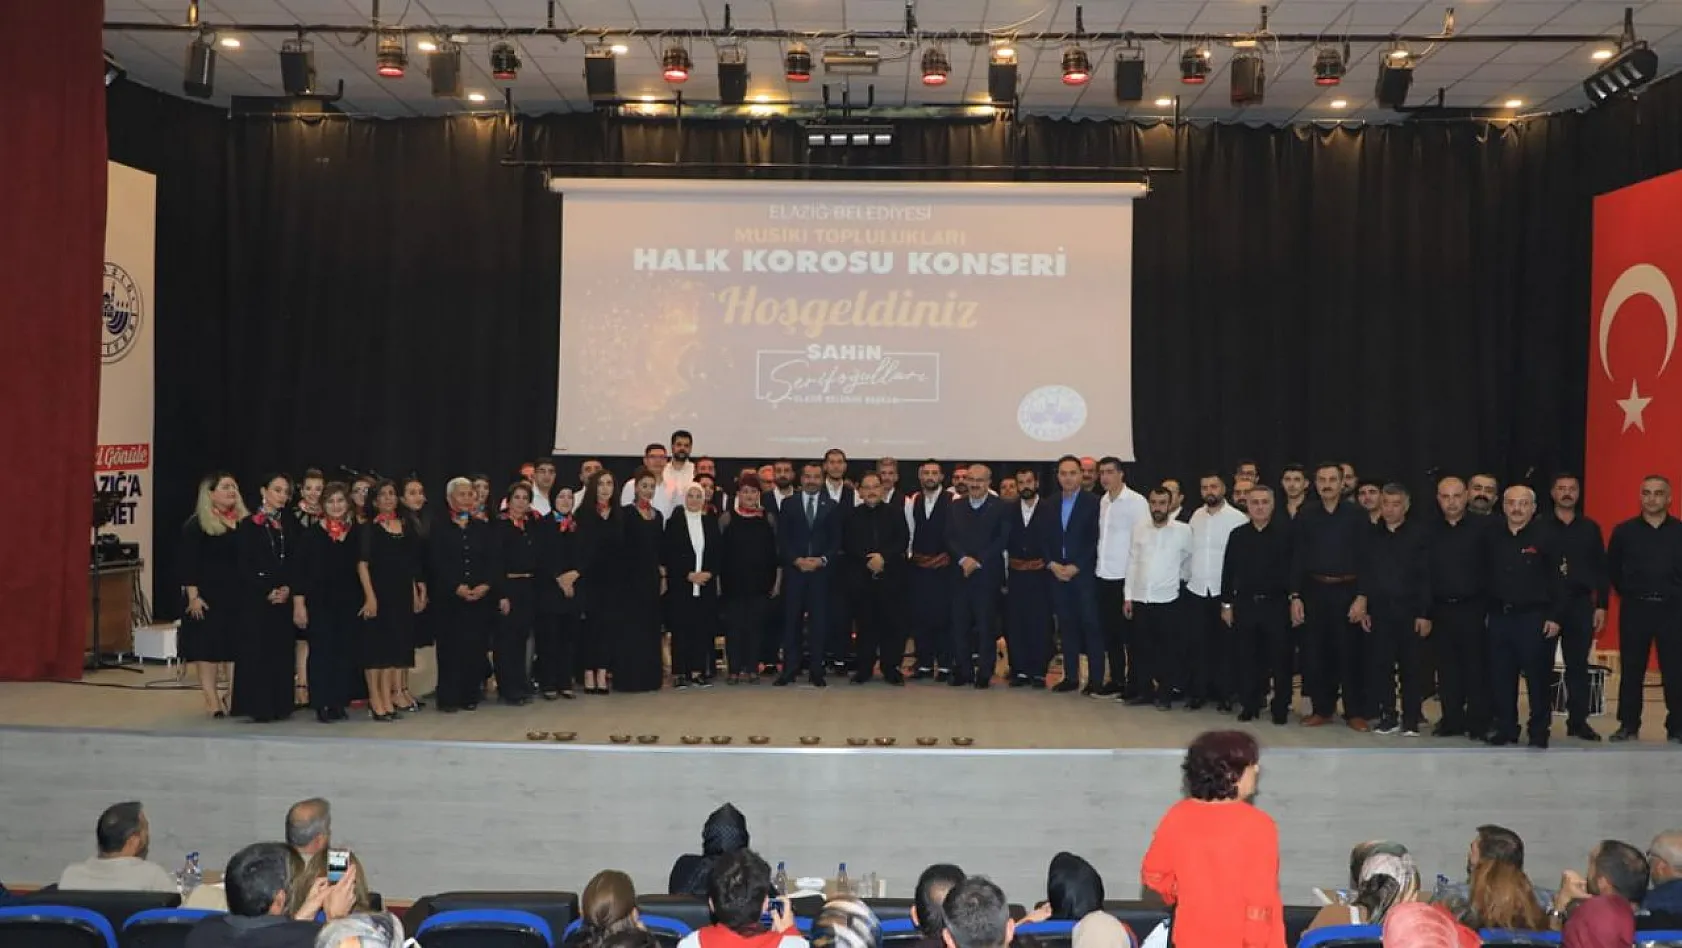 Elazığ Belediyesi Halk Korosu, İlk Konserini Yoğun Katılımla Gerçekleştirdi